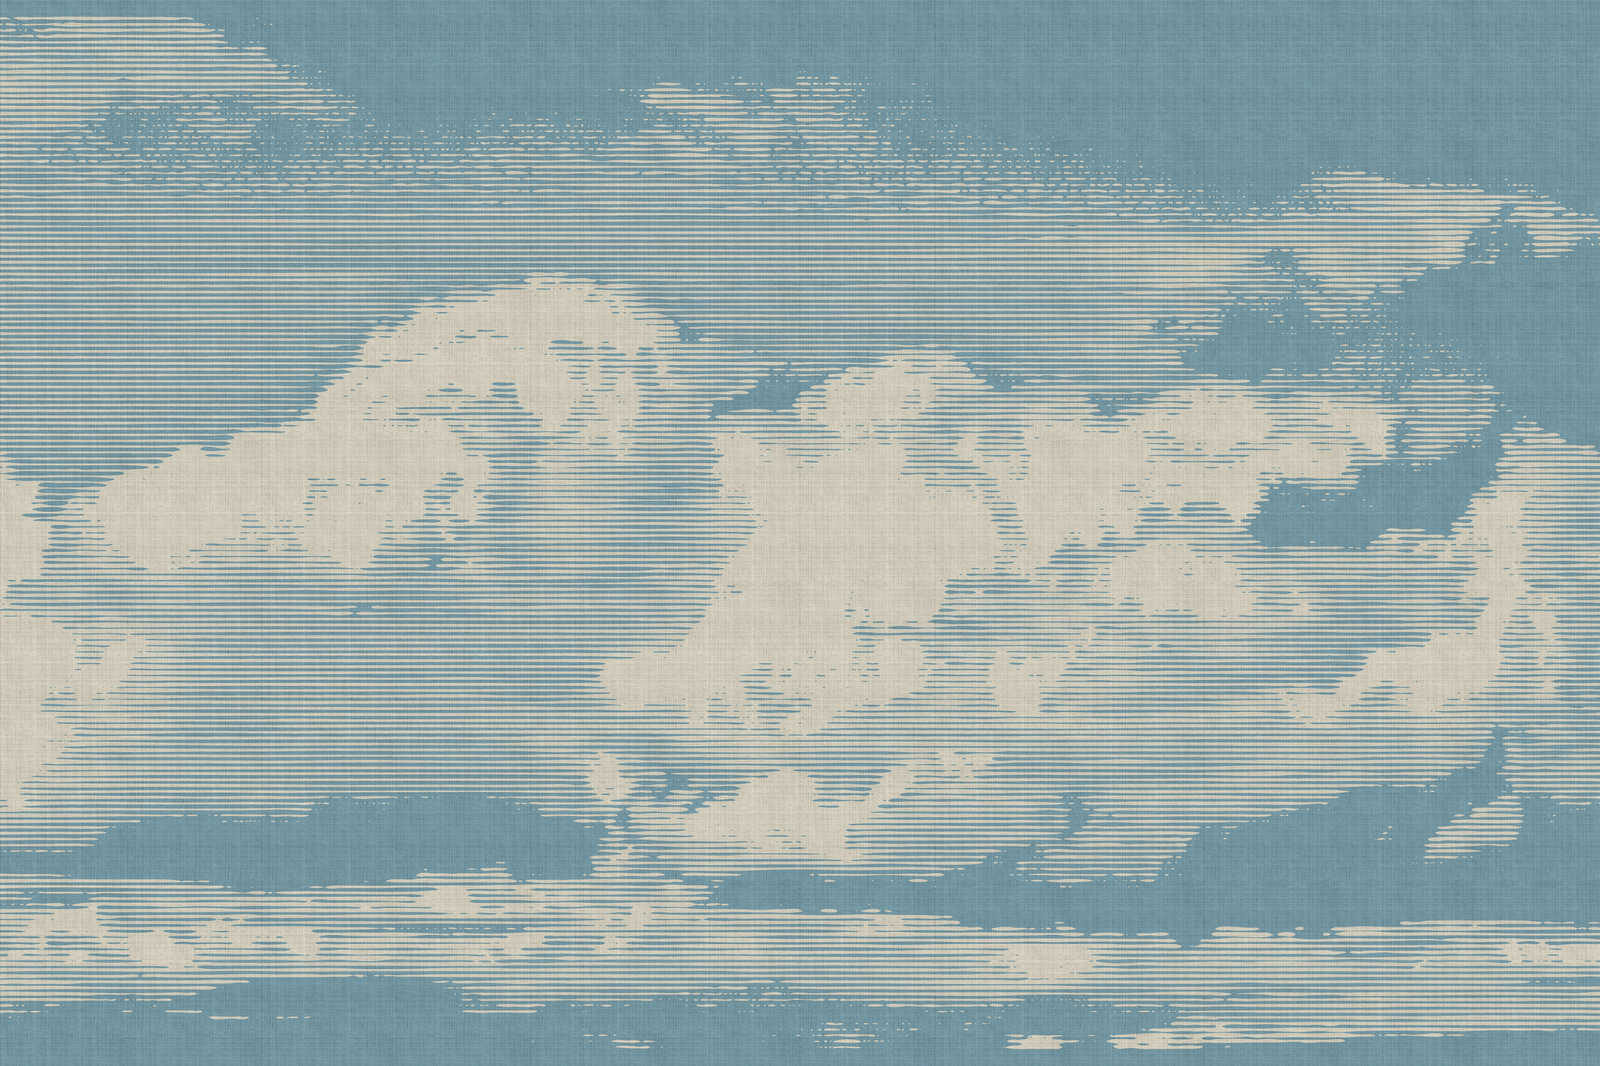             Clouds 1 - Himmlisches Leinwandbild mit Wolkenmotiv in naturleinen Optik – 1,20 m x 0,80 m
        